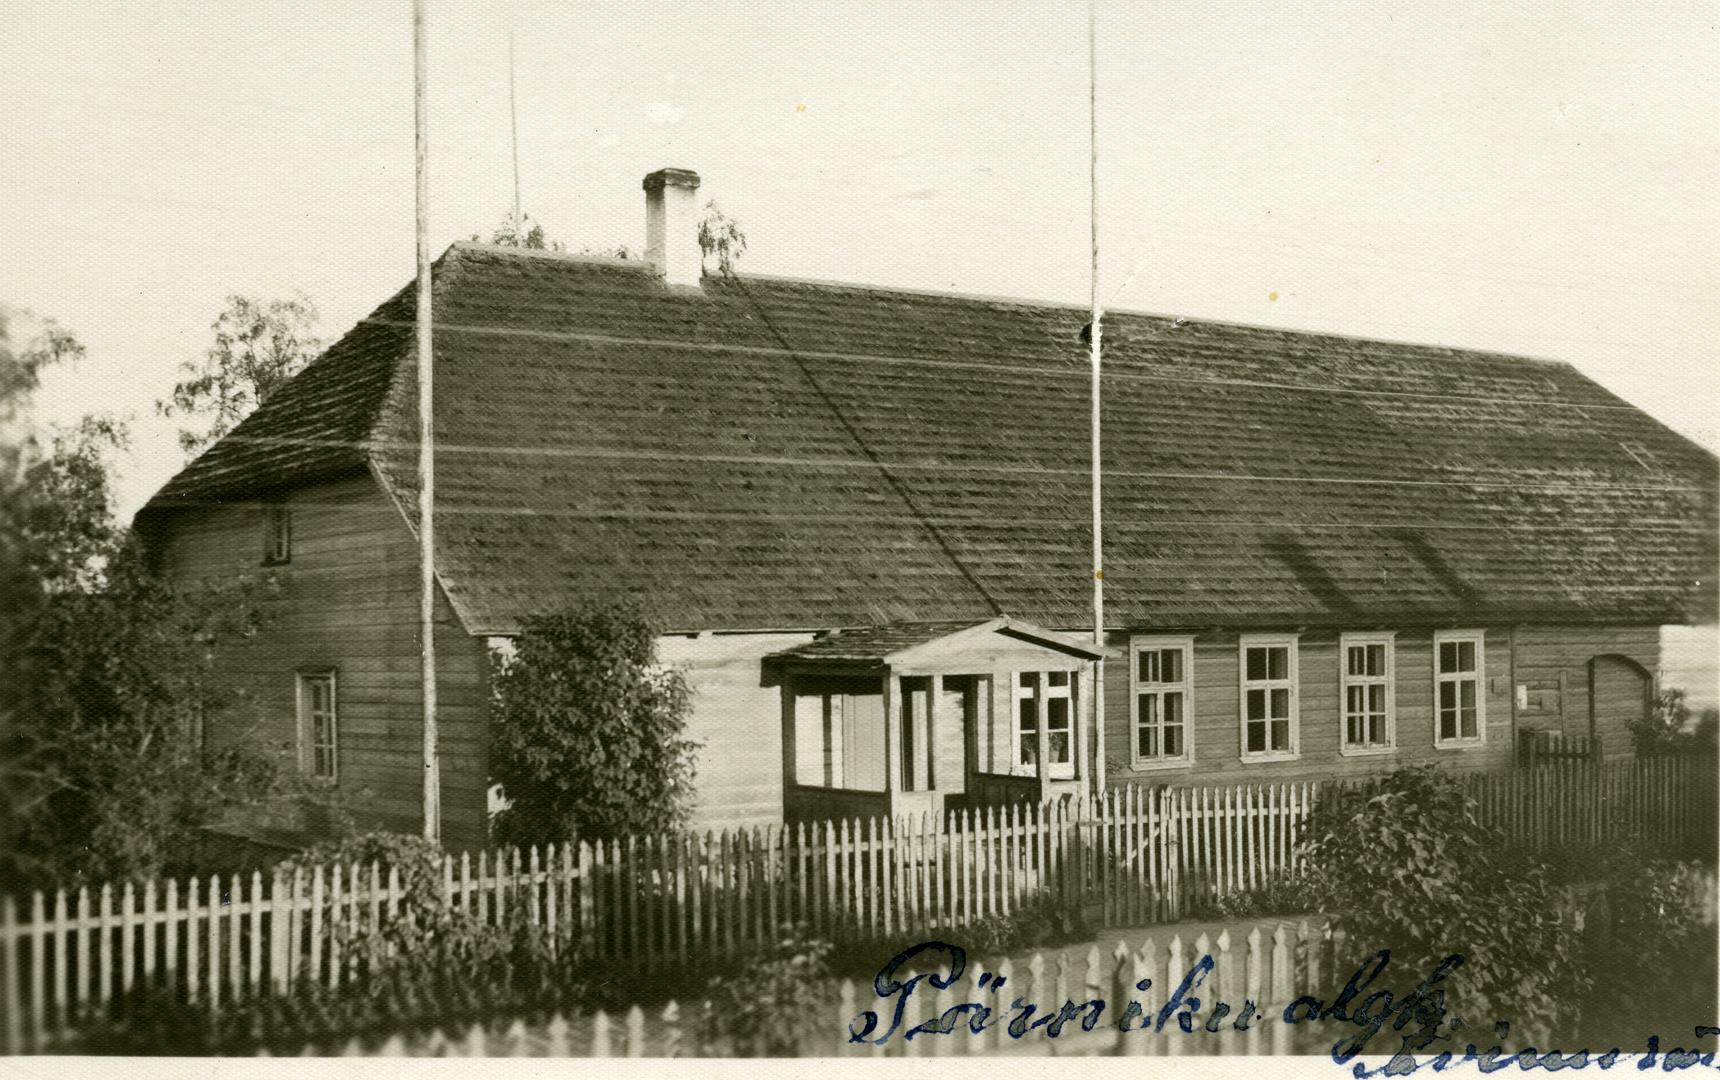 Pärniku Algkooli building in Avinurme